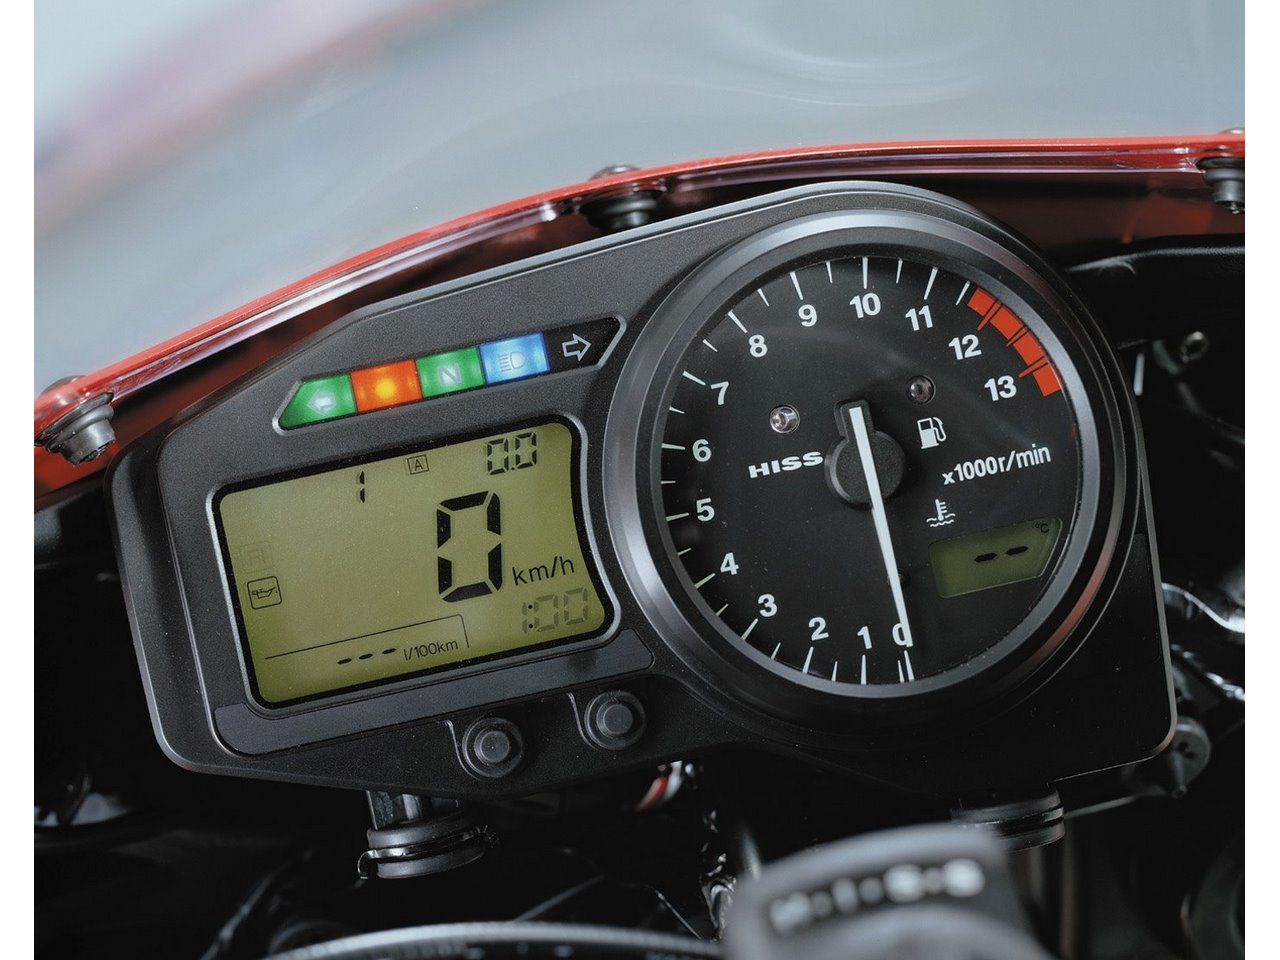 Honda CBR954RR